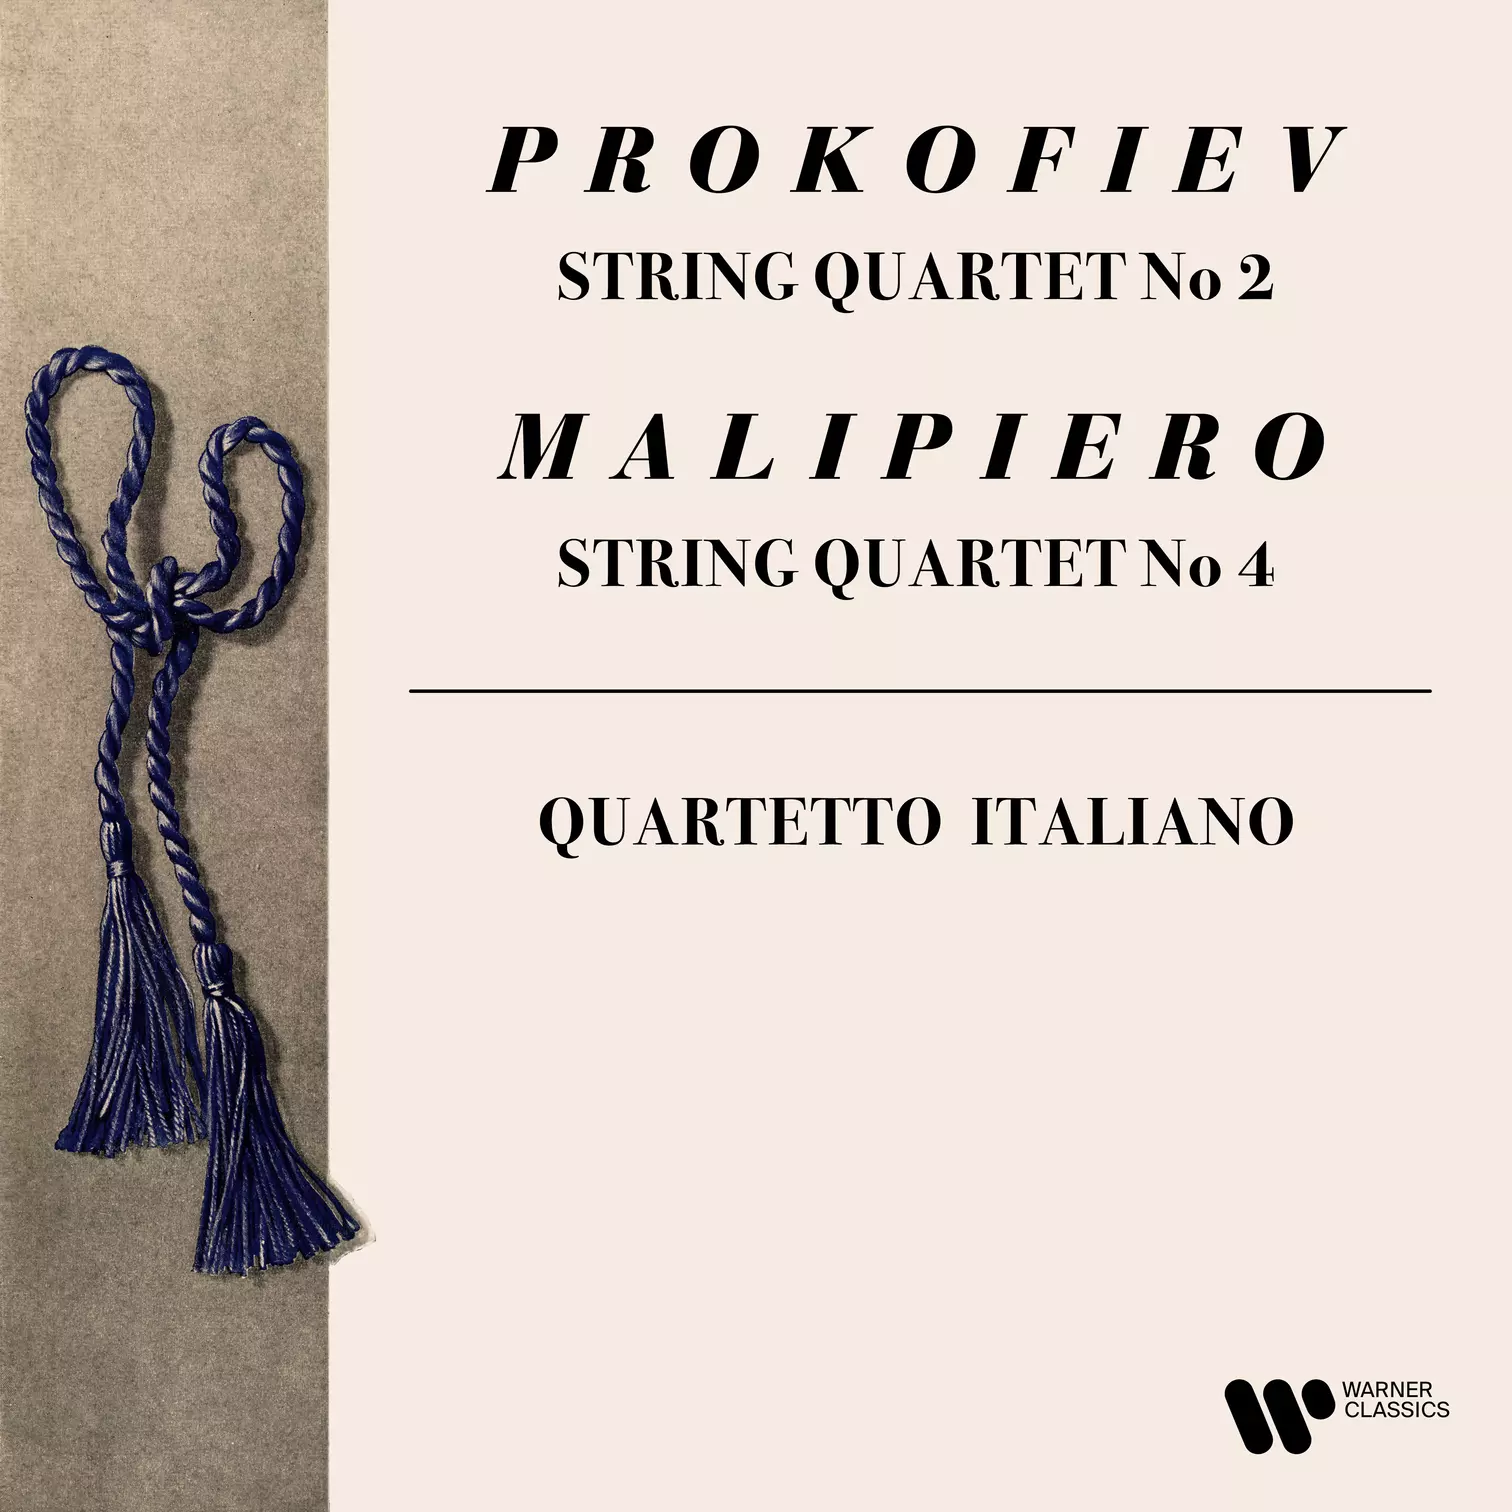 Prokofiev: String Quartet No. 2 - Malipiero: String Quartet No. 4